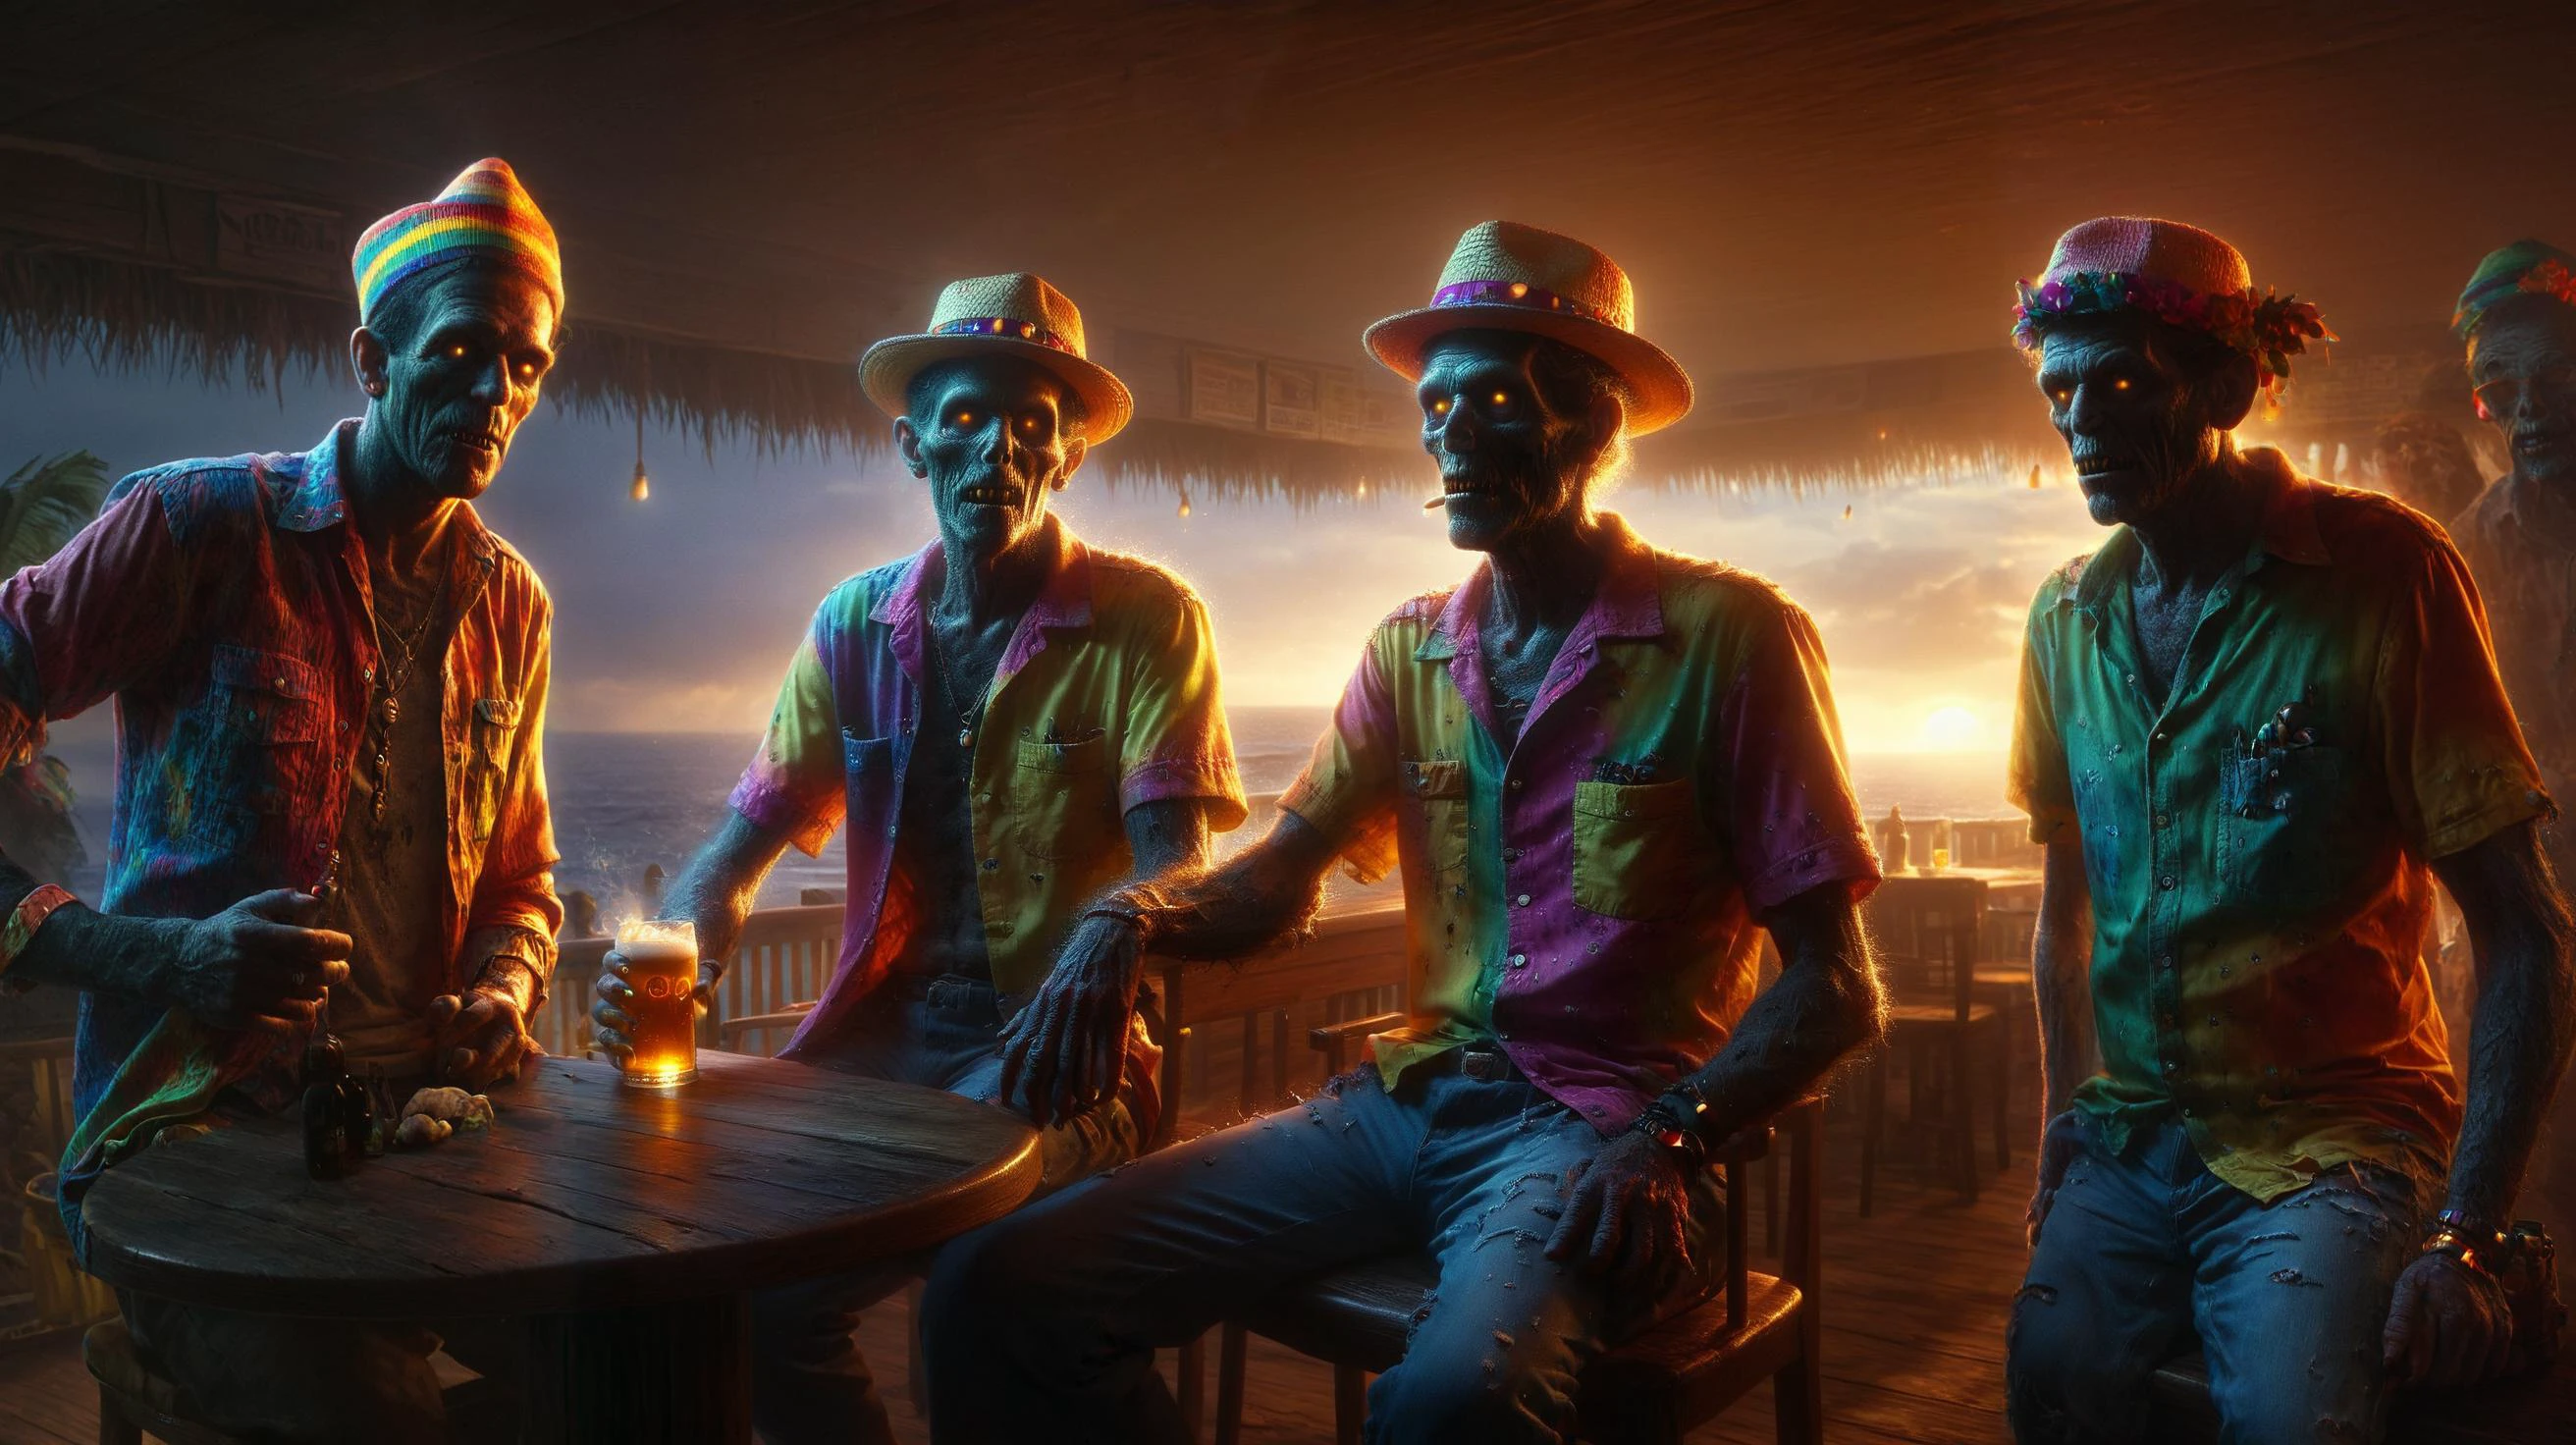 Ultrarealistische 8K-CG, Meisterwerk, professionelle Kunstwerke, dramatische Beleuchtung,  Gemälde von zwei (Zombies) trägt einen regenbogenfarbenen Hut und ein Hawaiihemd, dunkel, Chiaroscuro, zurückhaltend, mit der Embr, Sitzen in einer sonnigen Strandbar, Bier trinken, glänzende goldene Armbanduhr